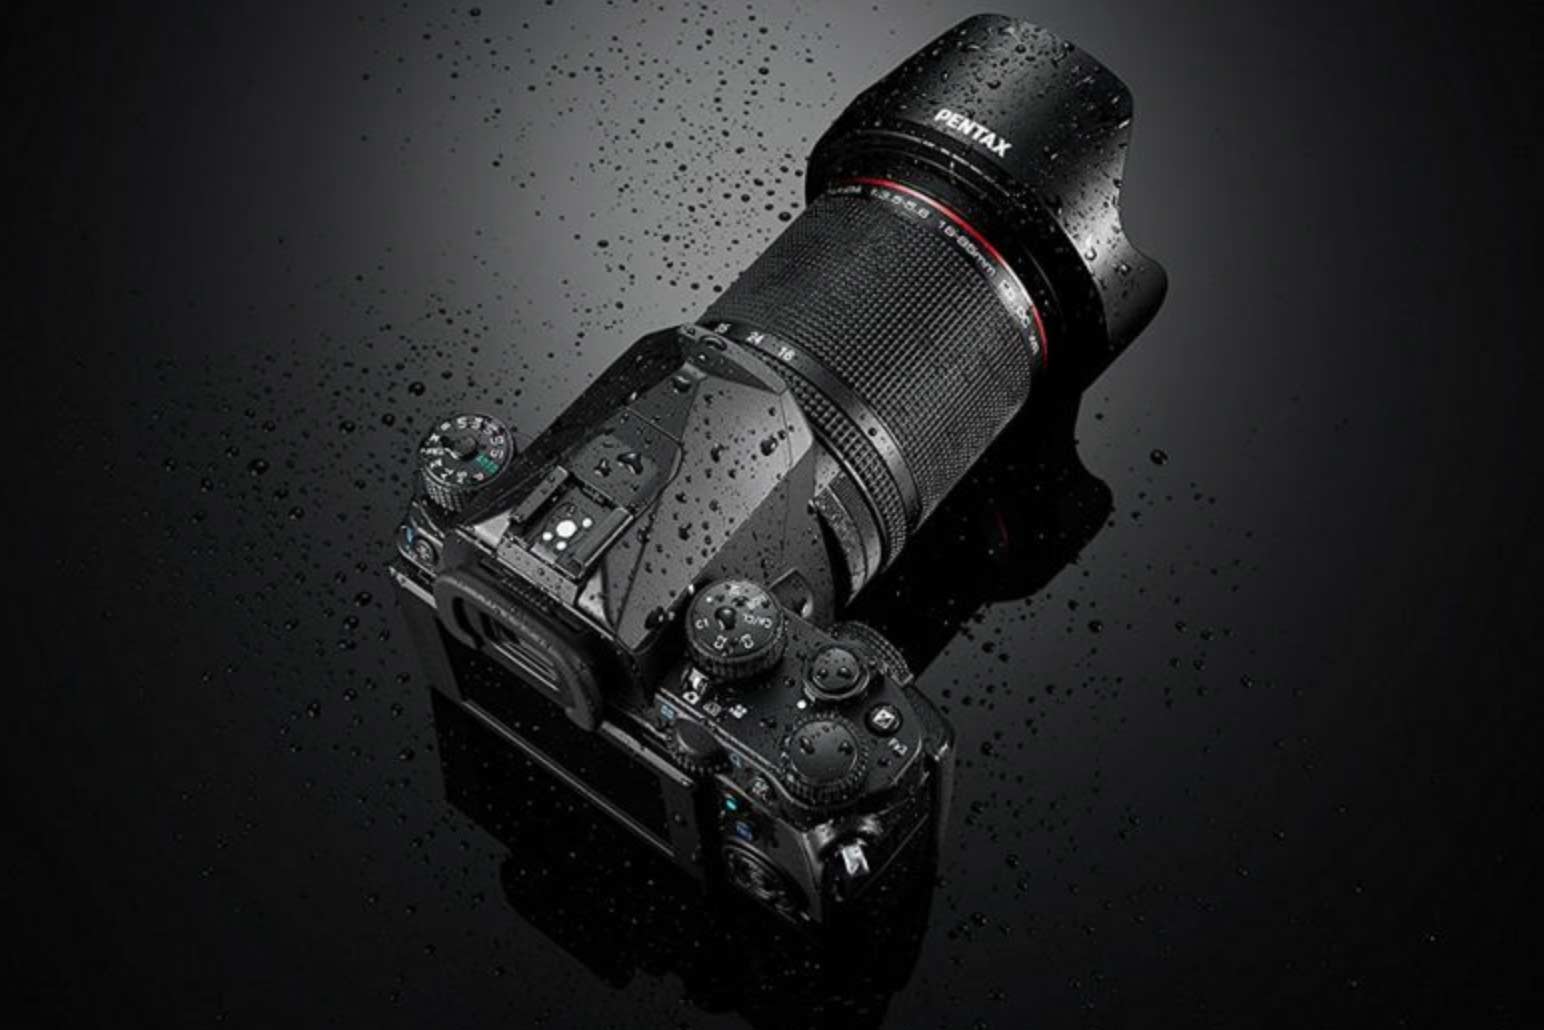 Jaki aparat do 5000 zł - Fujifilm X-S10